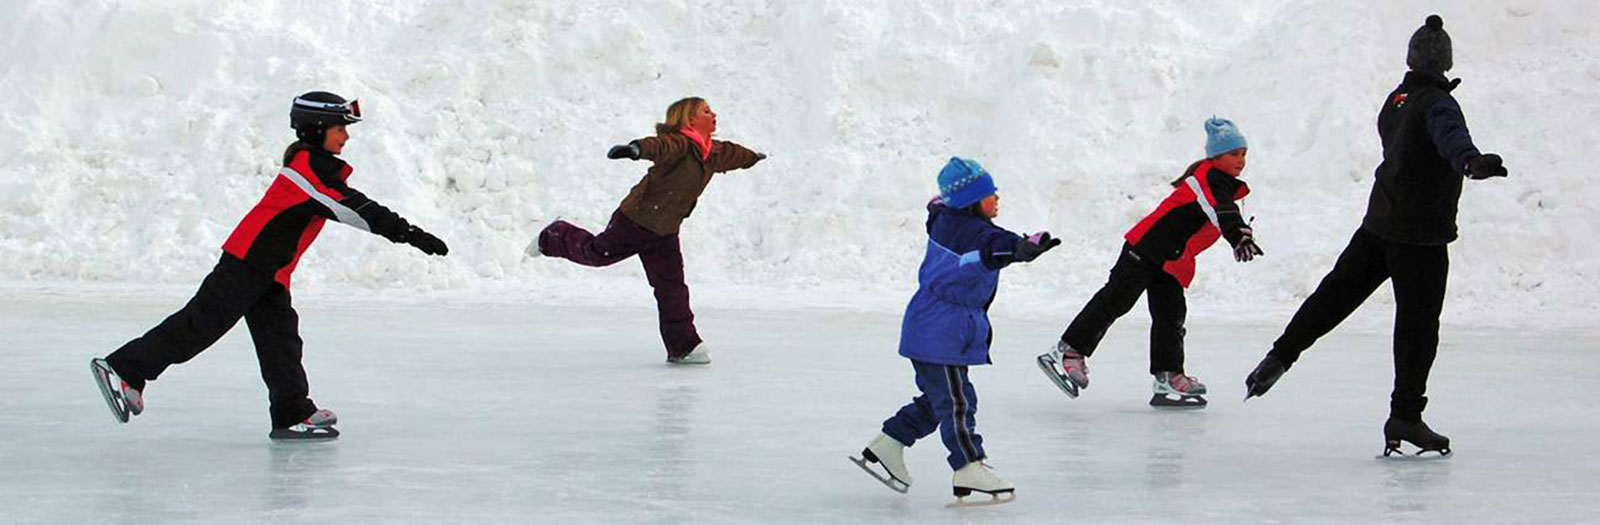 ice skating in breckenridge